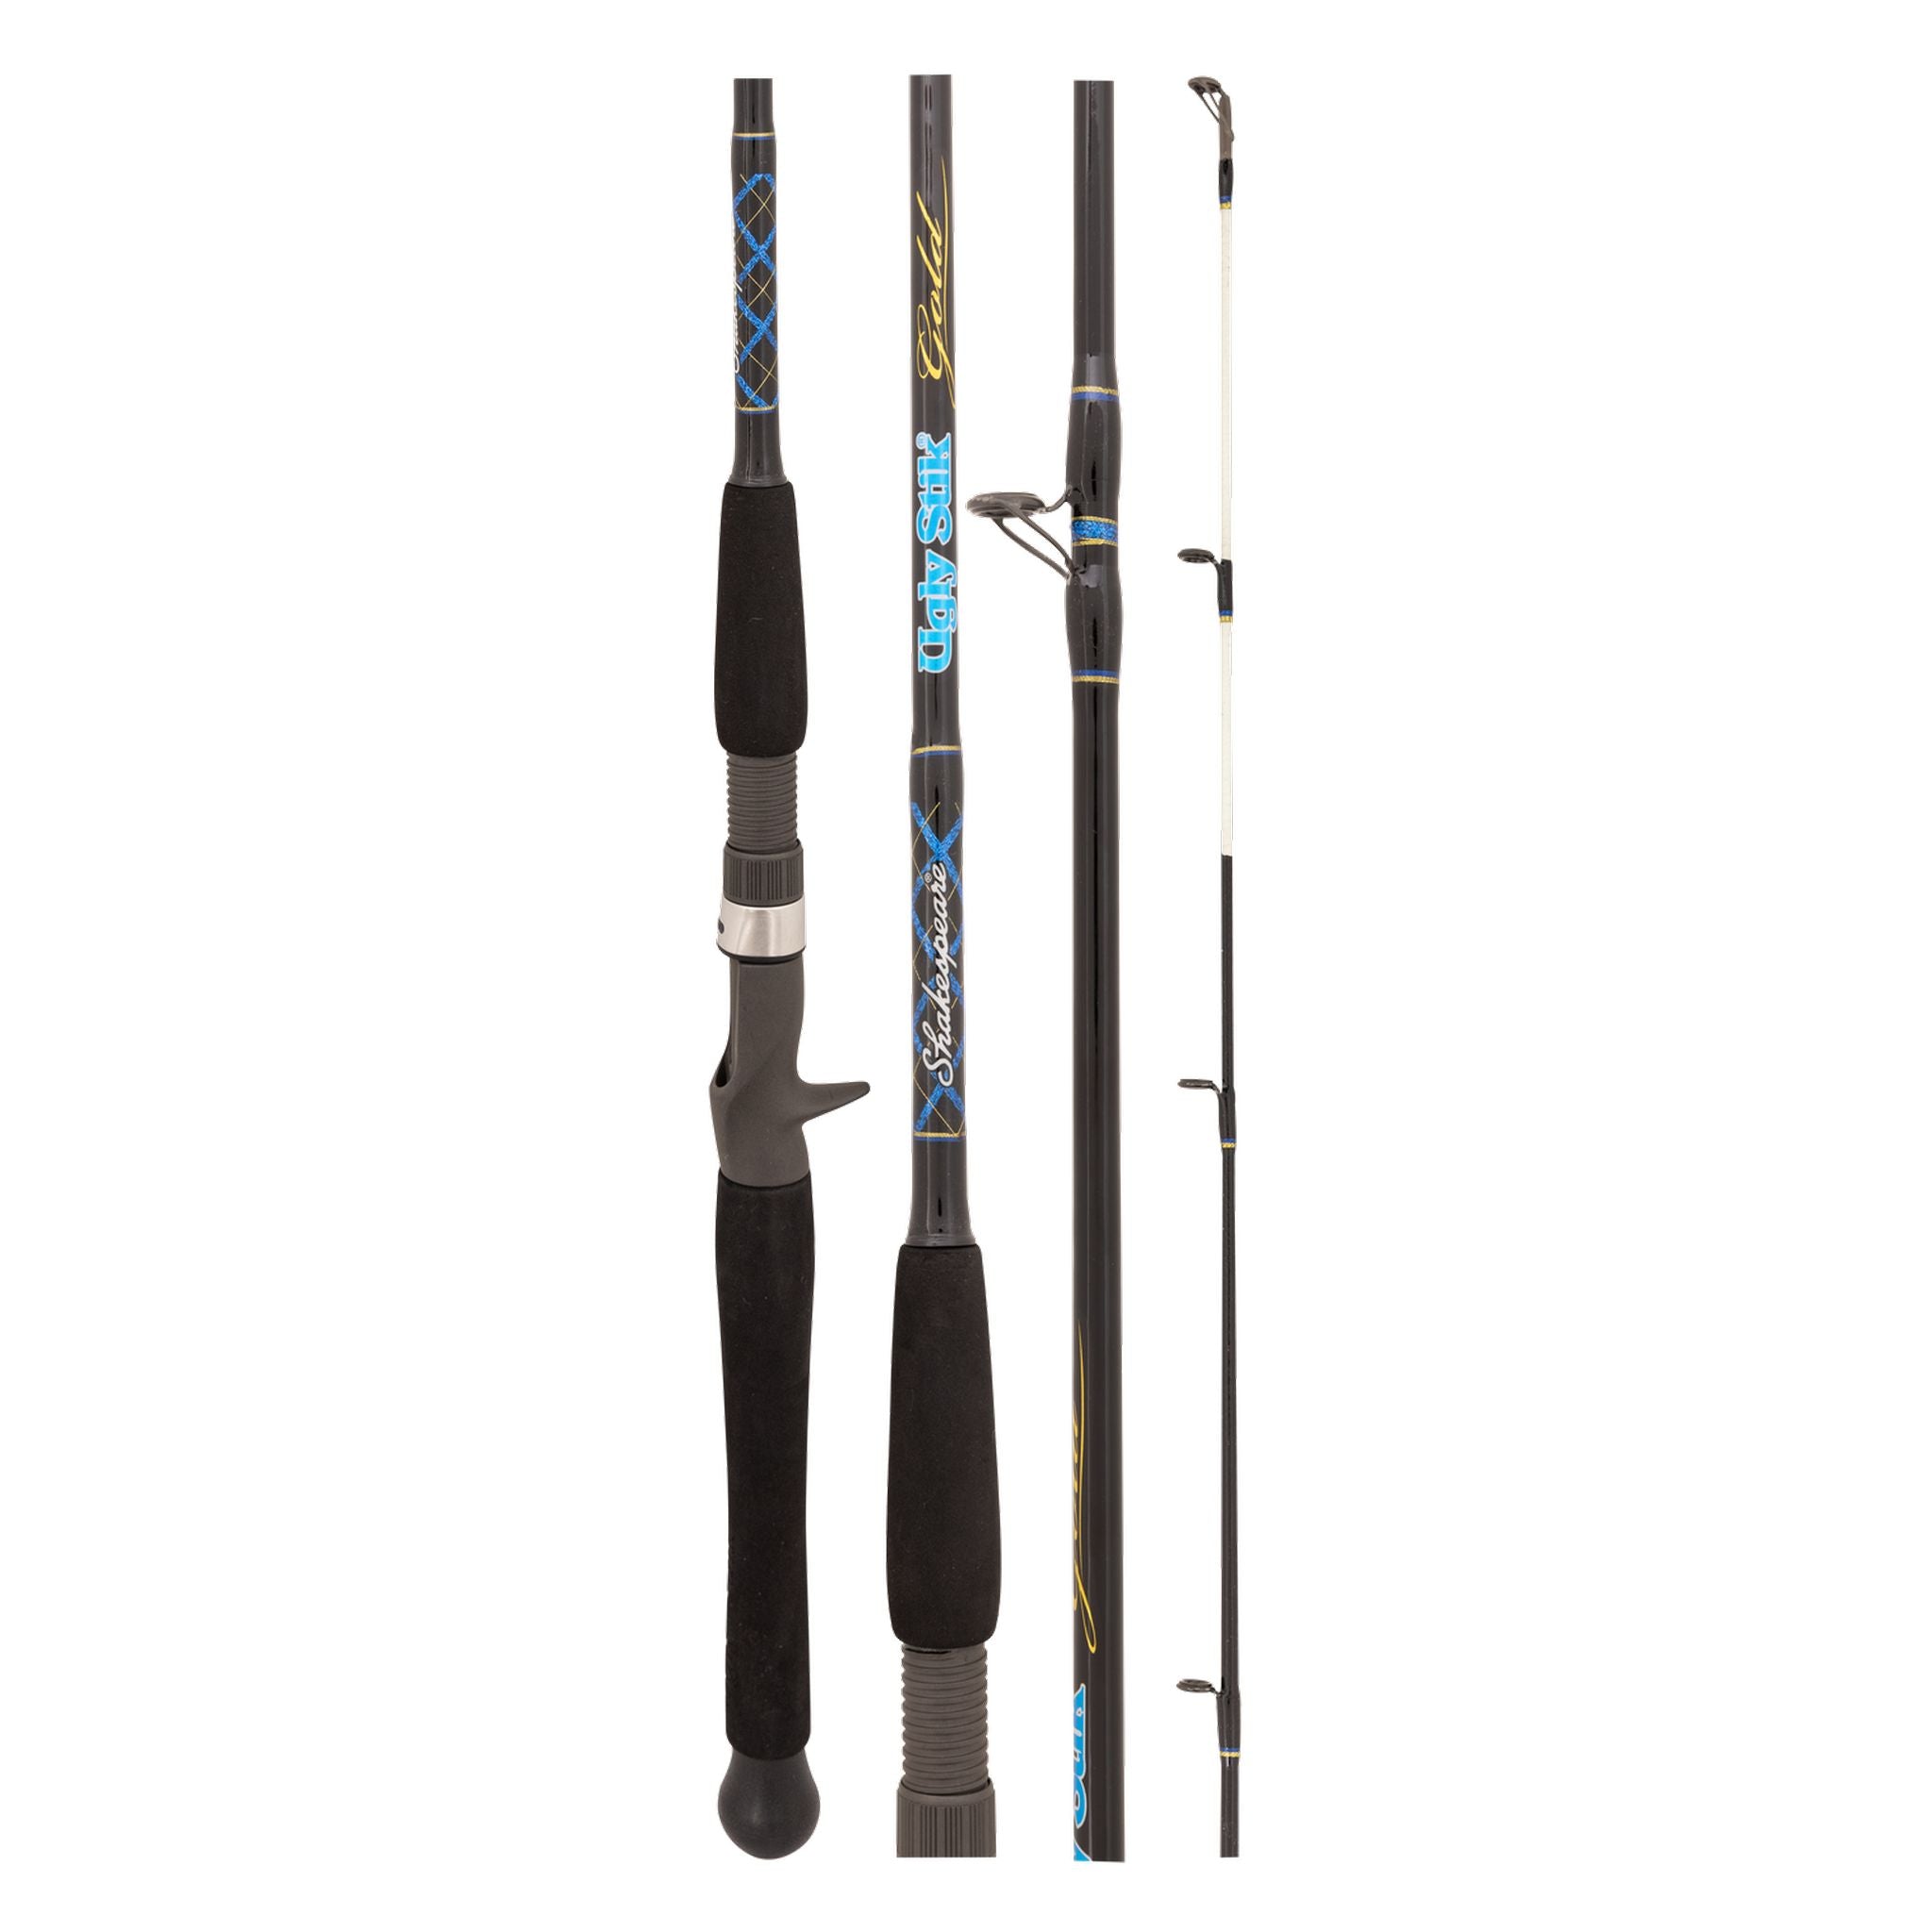 Ugly Stick USG-OHC 601H 10-15kg 20-100g Overhead Fishing Rod